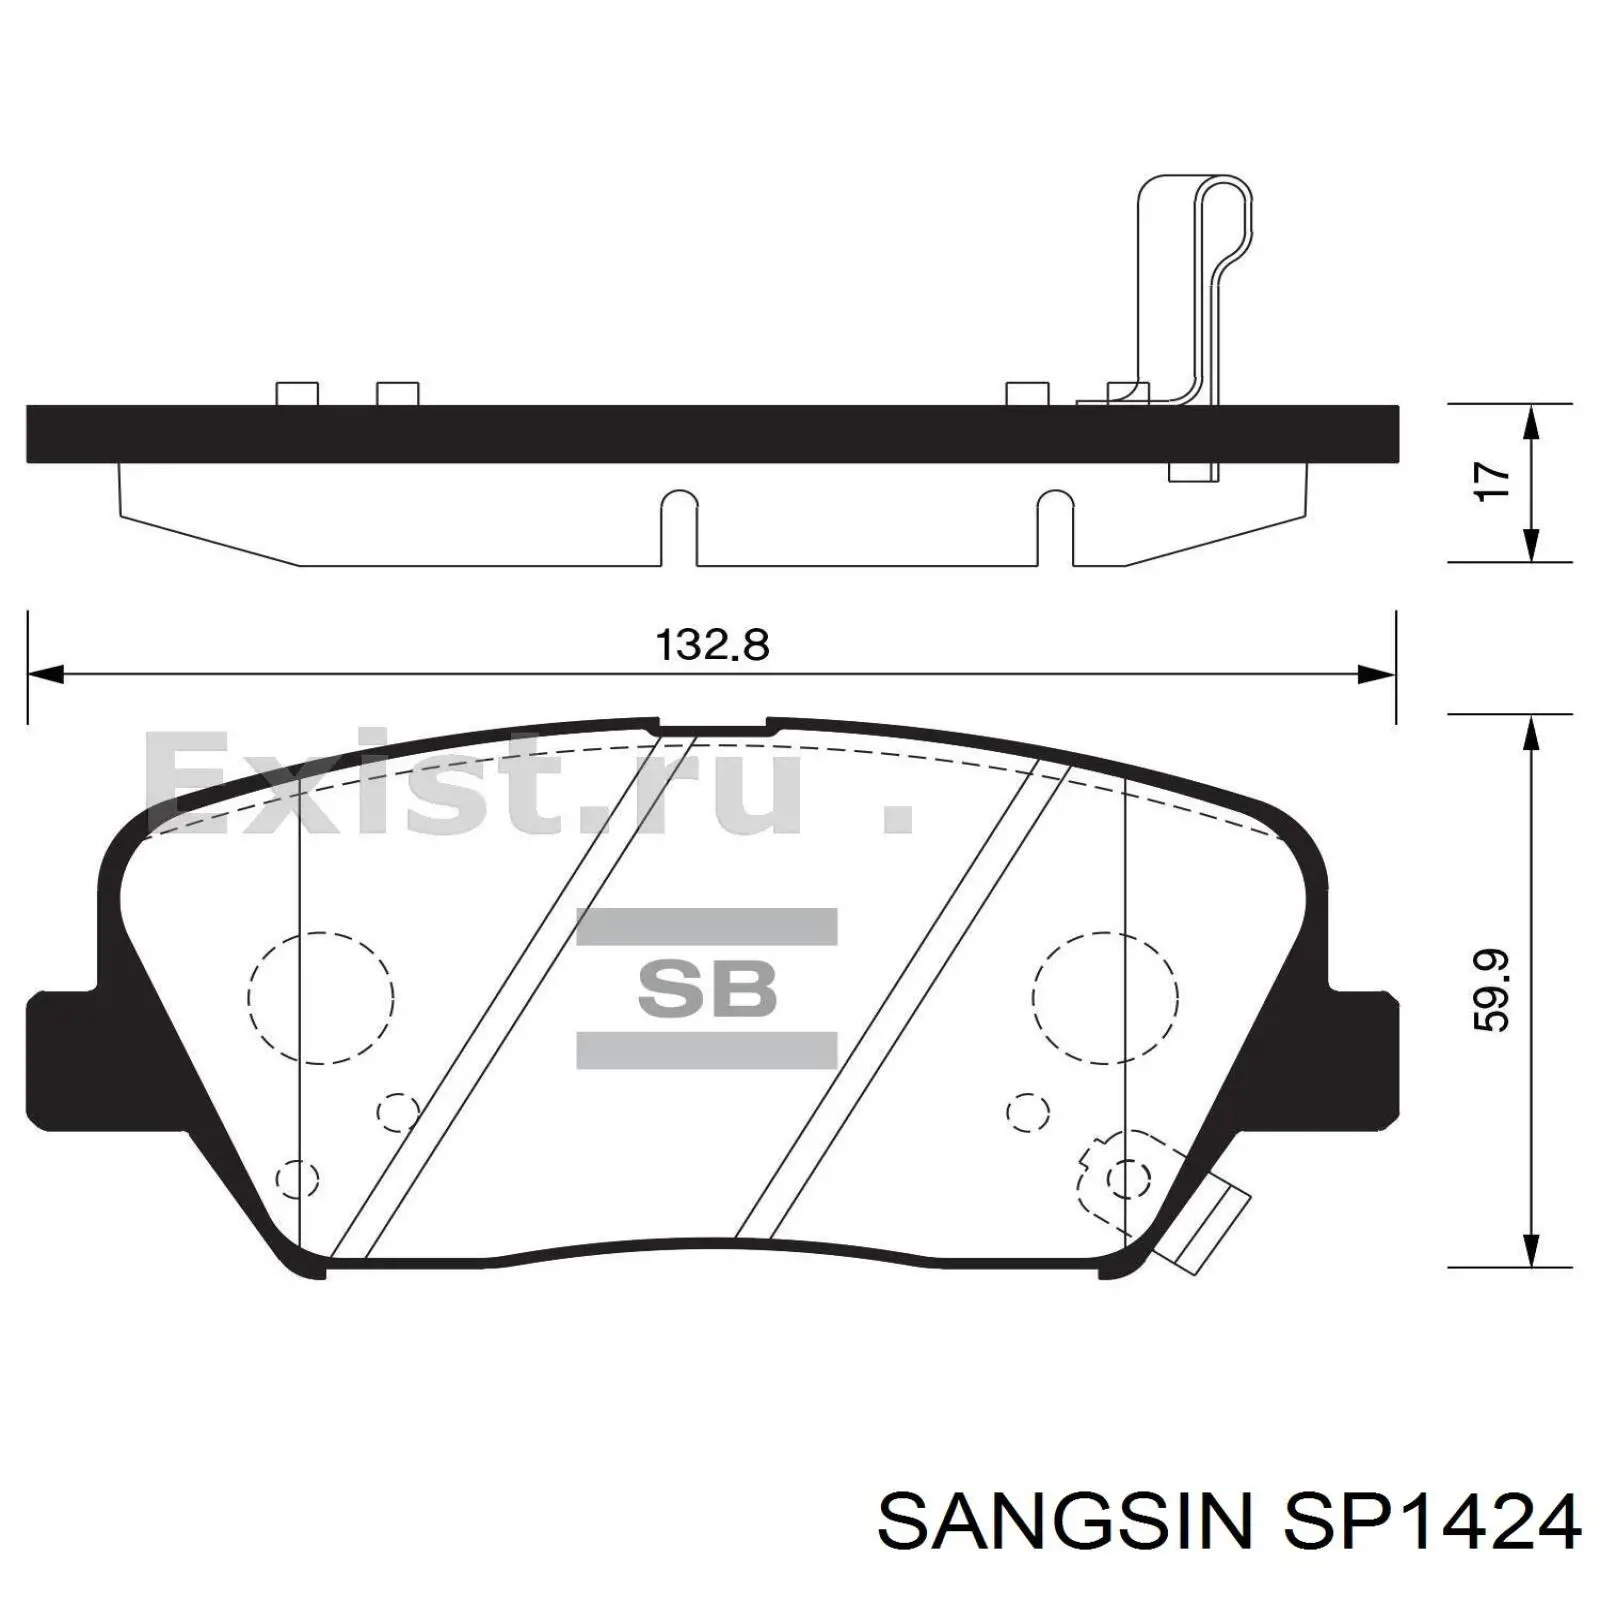 SP1424 Sangsin pastillas de freno delanteras